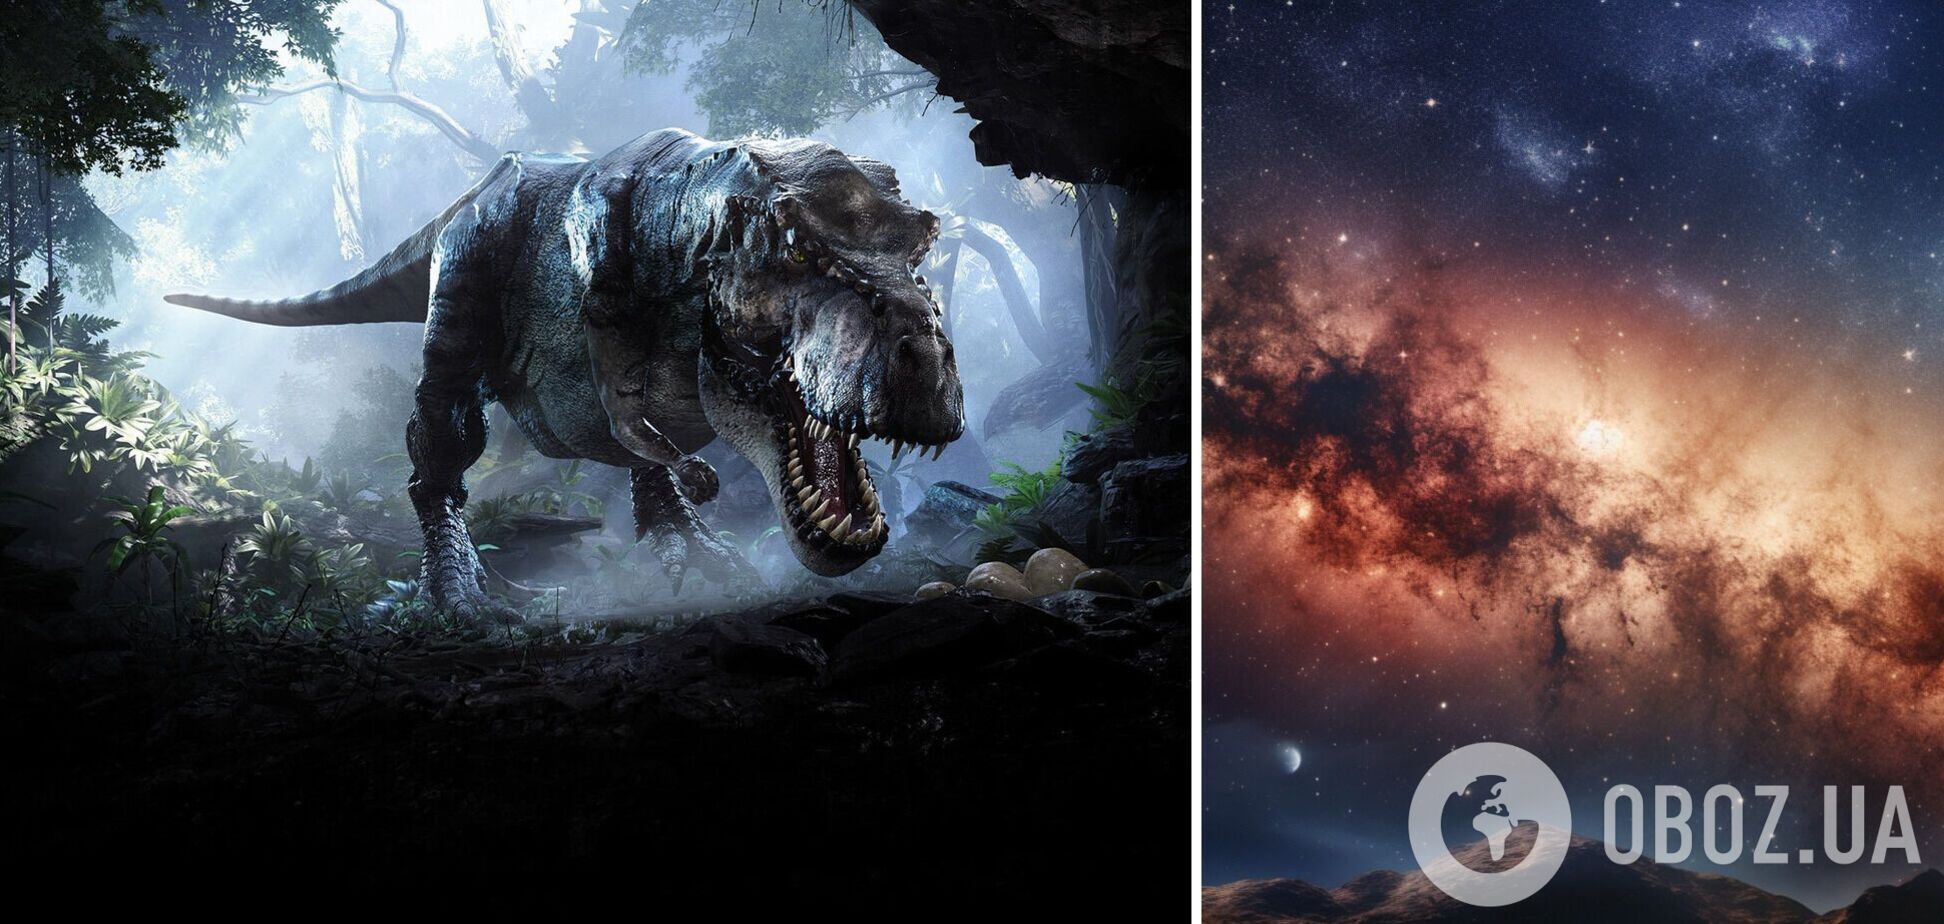 Динозаври існували на Землі, але зовсім в іншій частині галактики: у NASA пояснили, як таке можливо